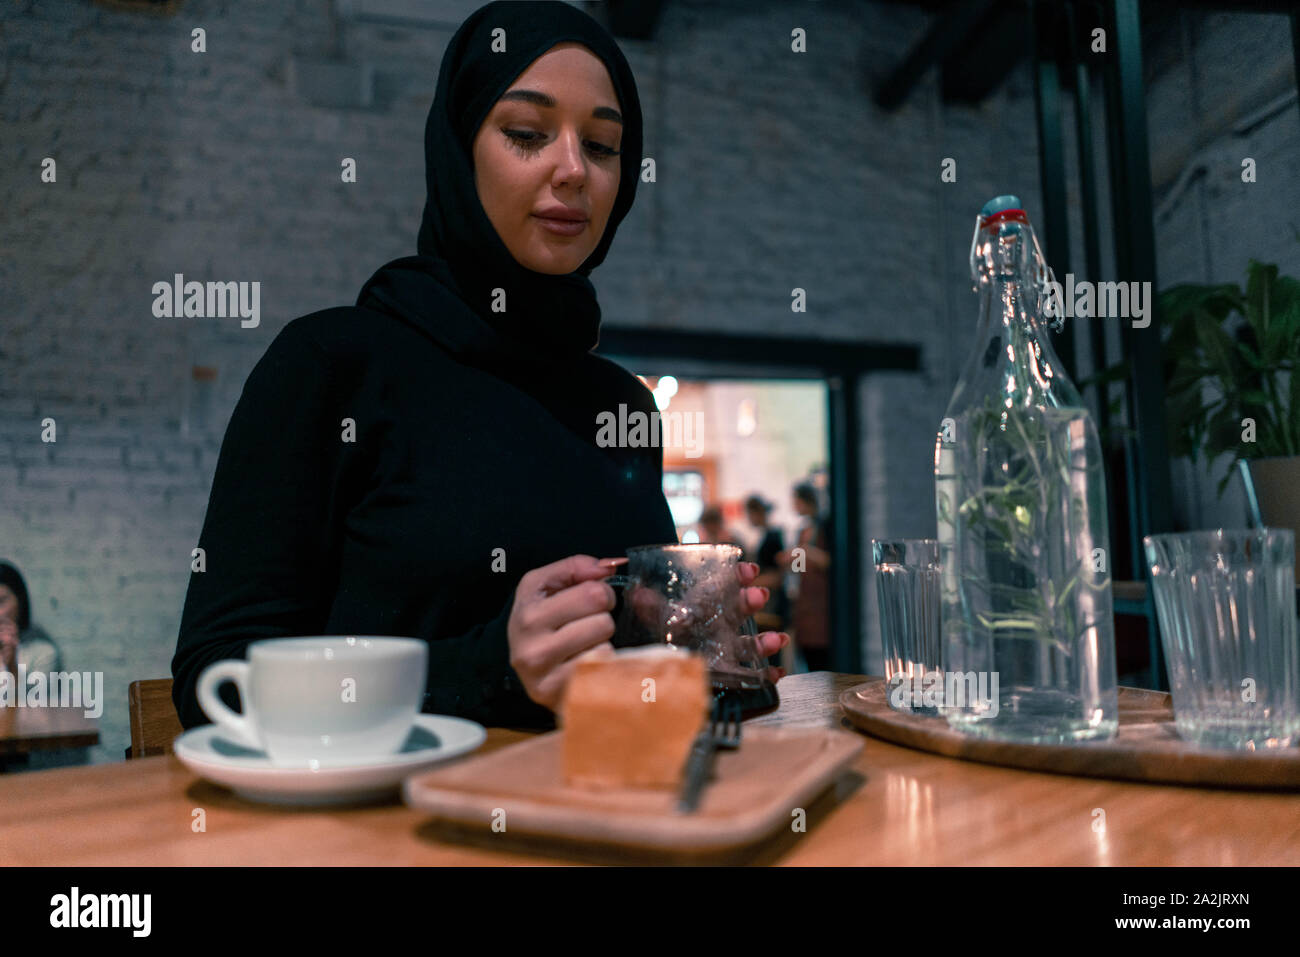 Muslimische Frau in der gemütlichen Cafe enjouing ihr Wochenende. Konzept der Lebens voller Leben mit modernen Haltung von tolerierbaren Gesellschaft. Aktiven Lebensstil Stockfoto